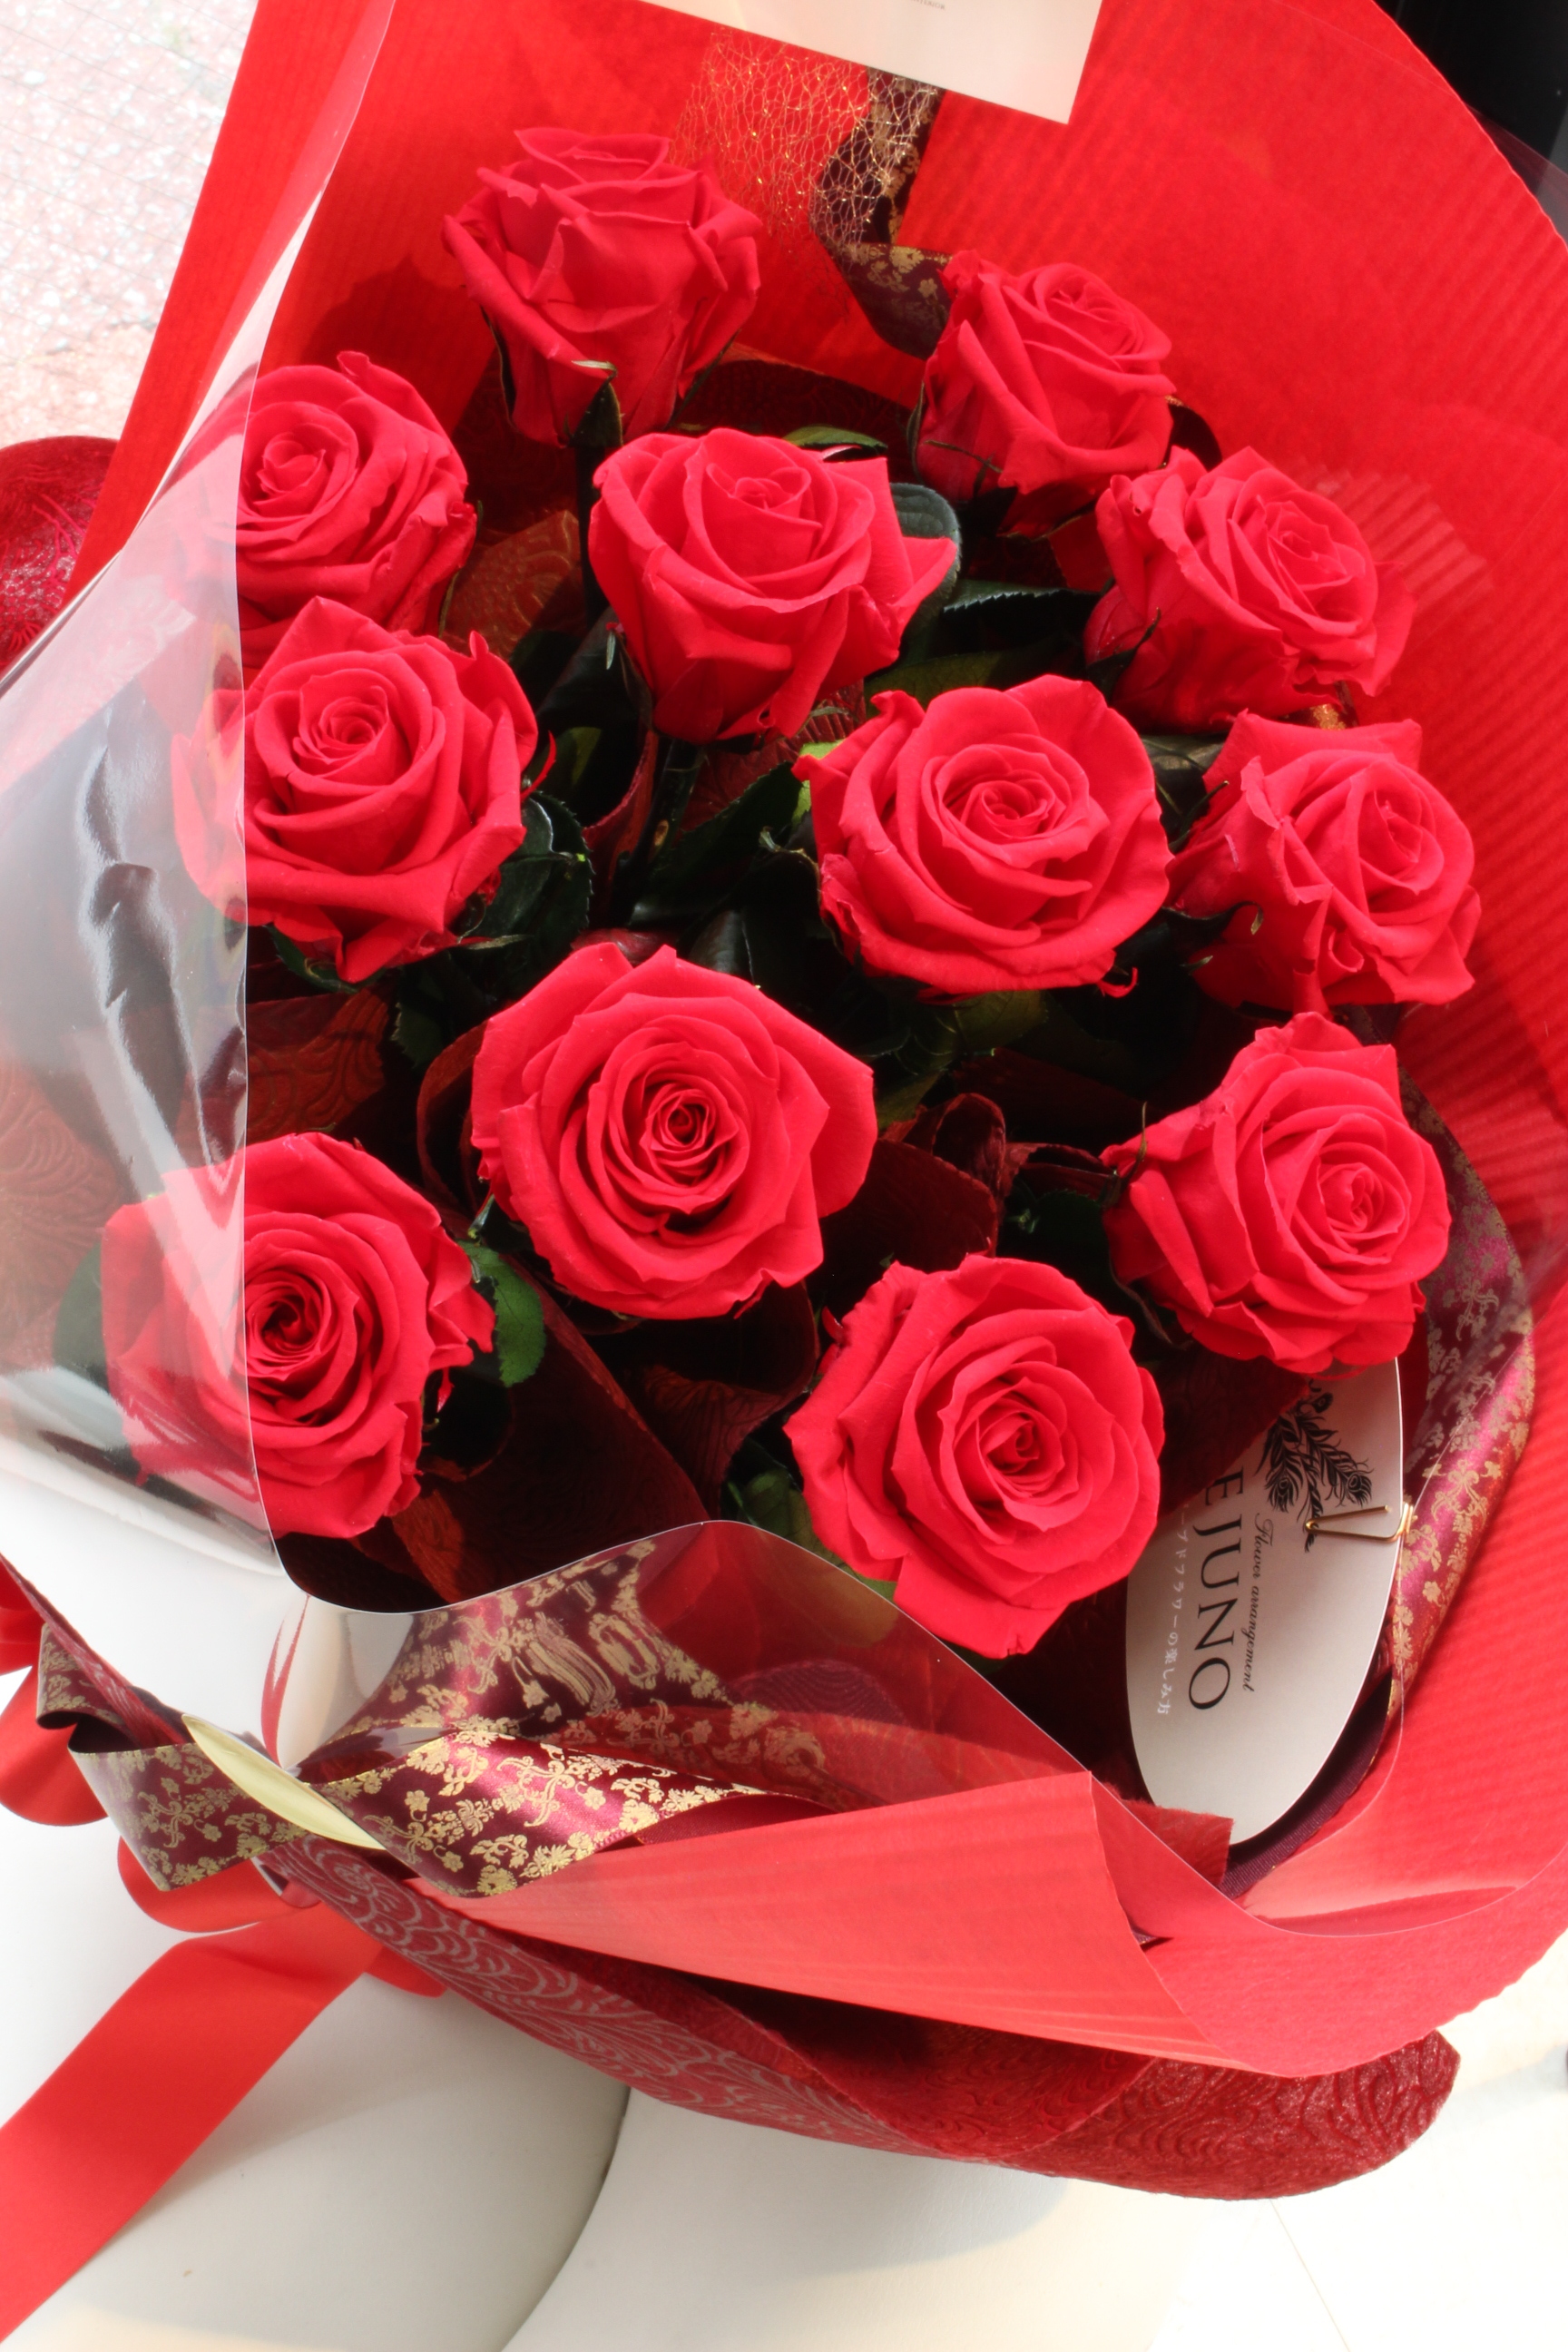 12本の赤い薔薇の花束 ダズンローズ 茎付き 福岡のプリザーブドフラワー専門店 Rosejunoローズユノwebshop ネットショッピング